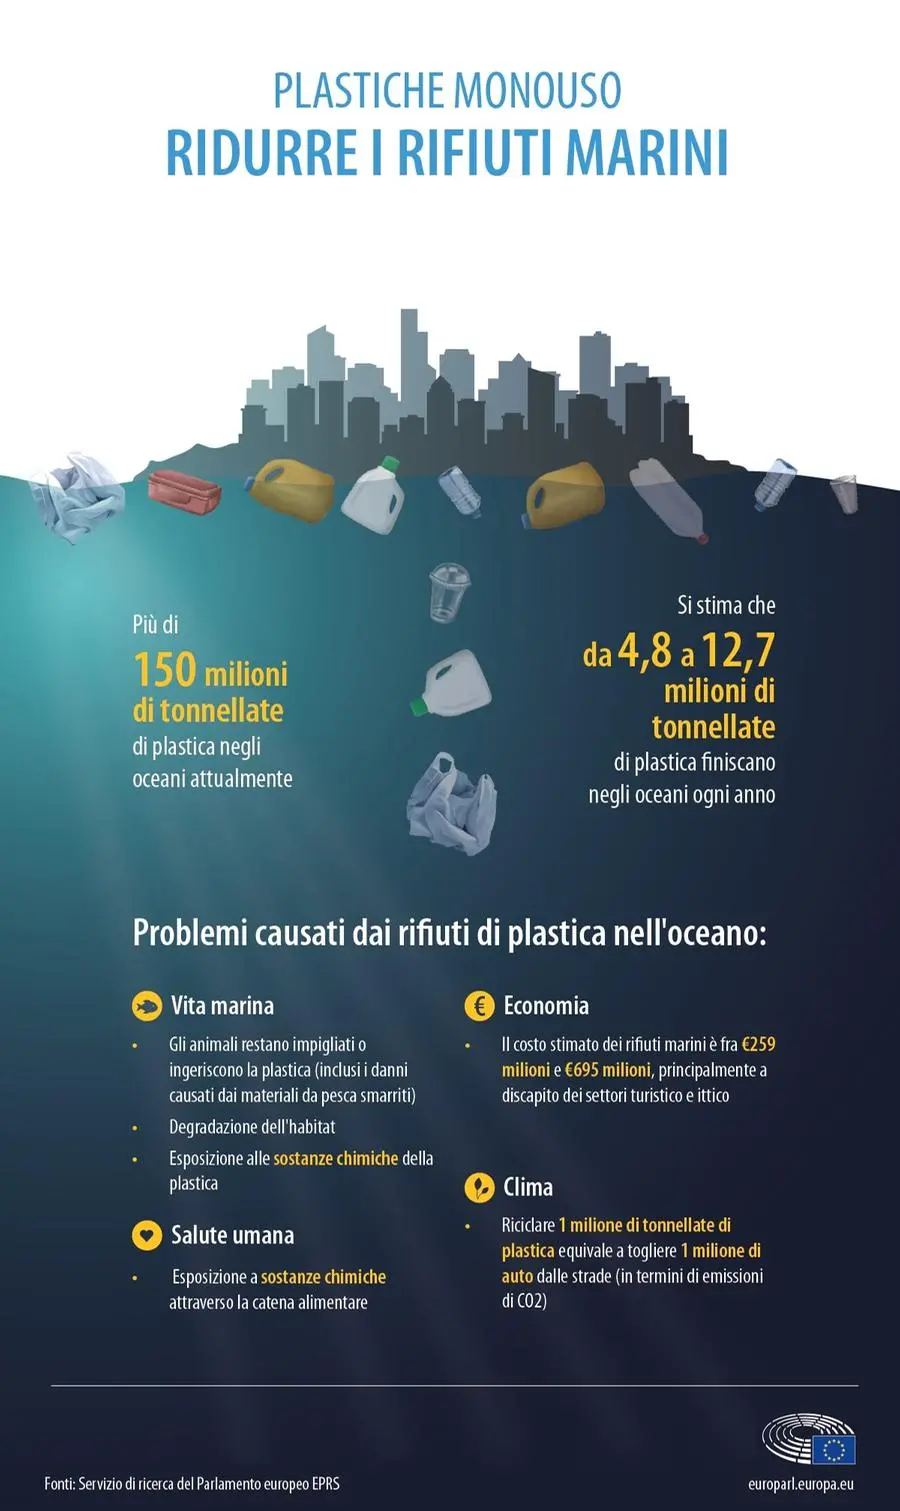 Ridurre i rifiuti marini - Fonte: Servizio di ricerca del Parlamento europeo EPRS